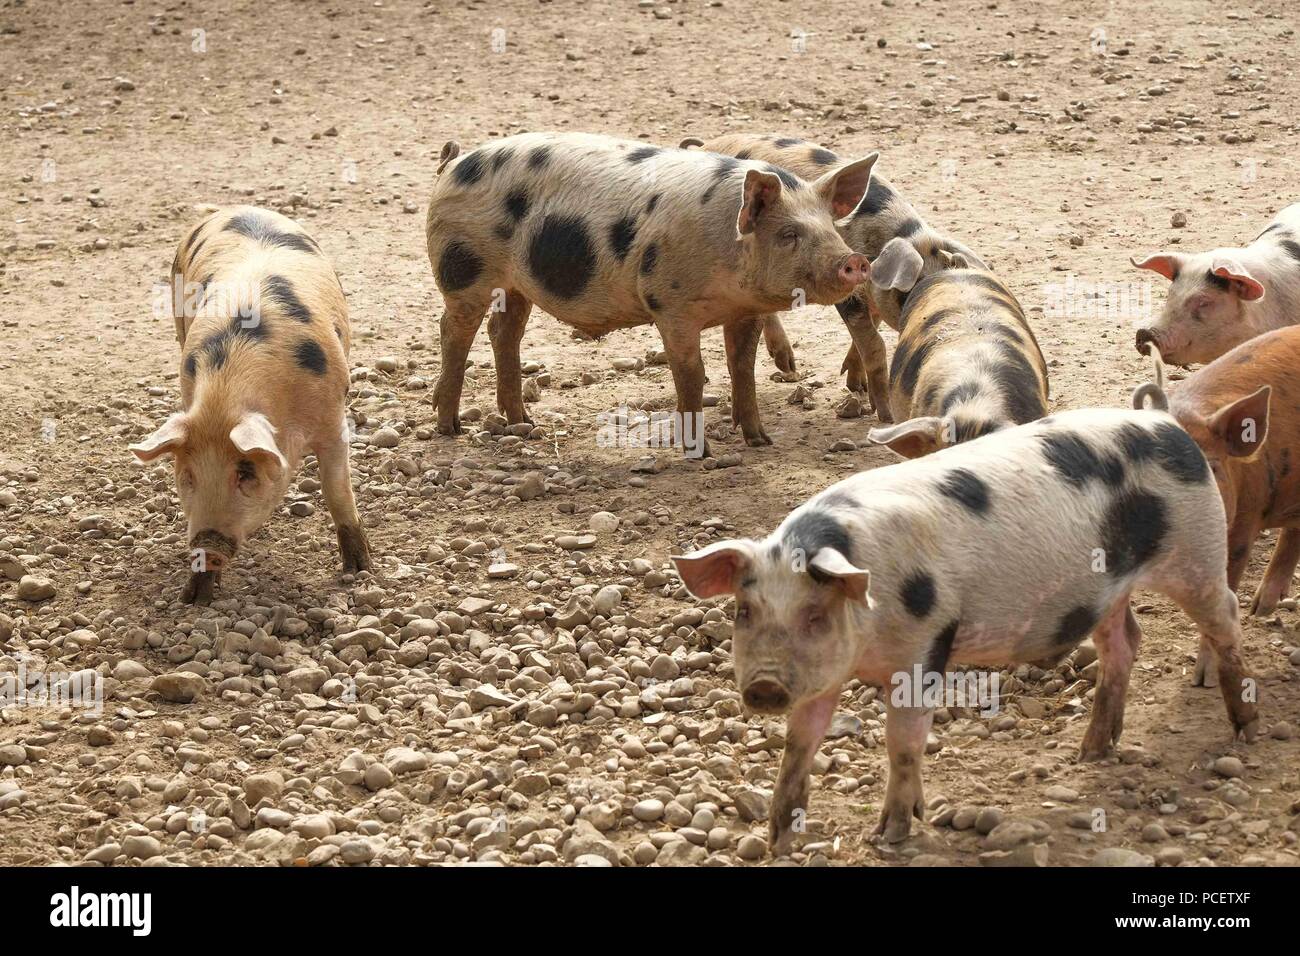 Los cerdos en un terreno seco y polvoriento Foto de stock